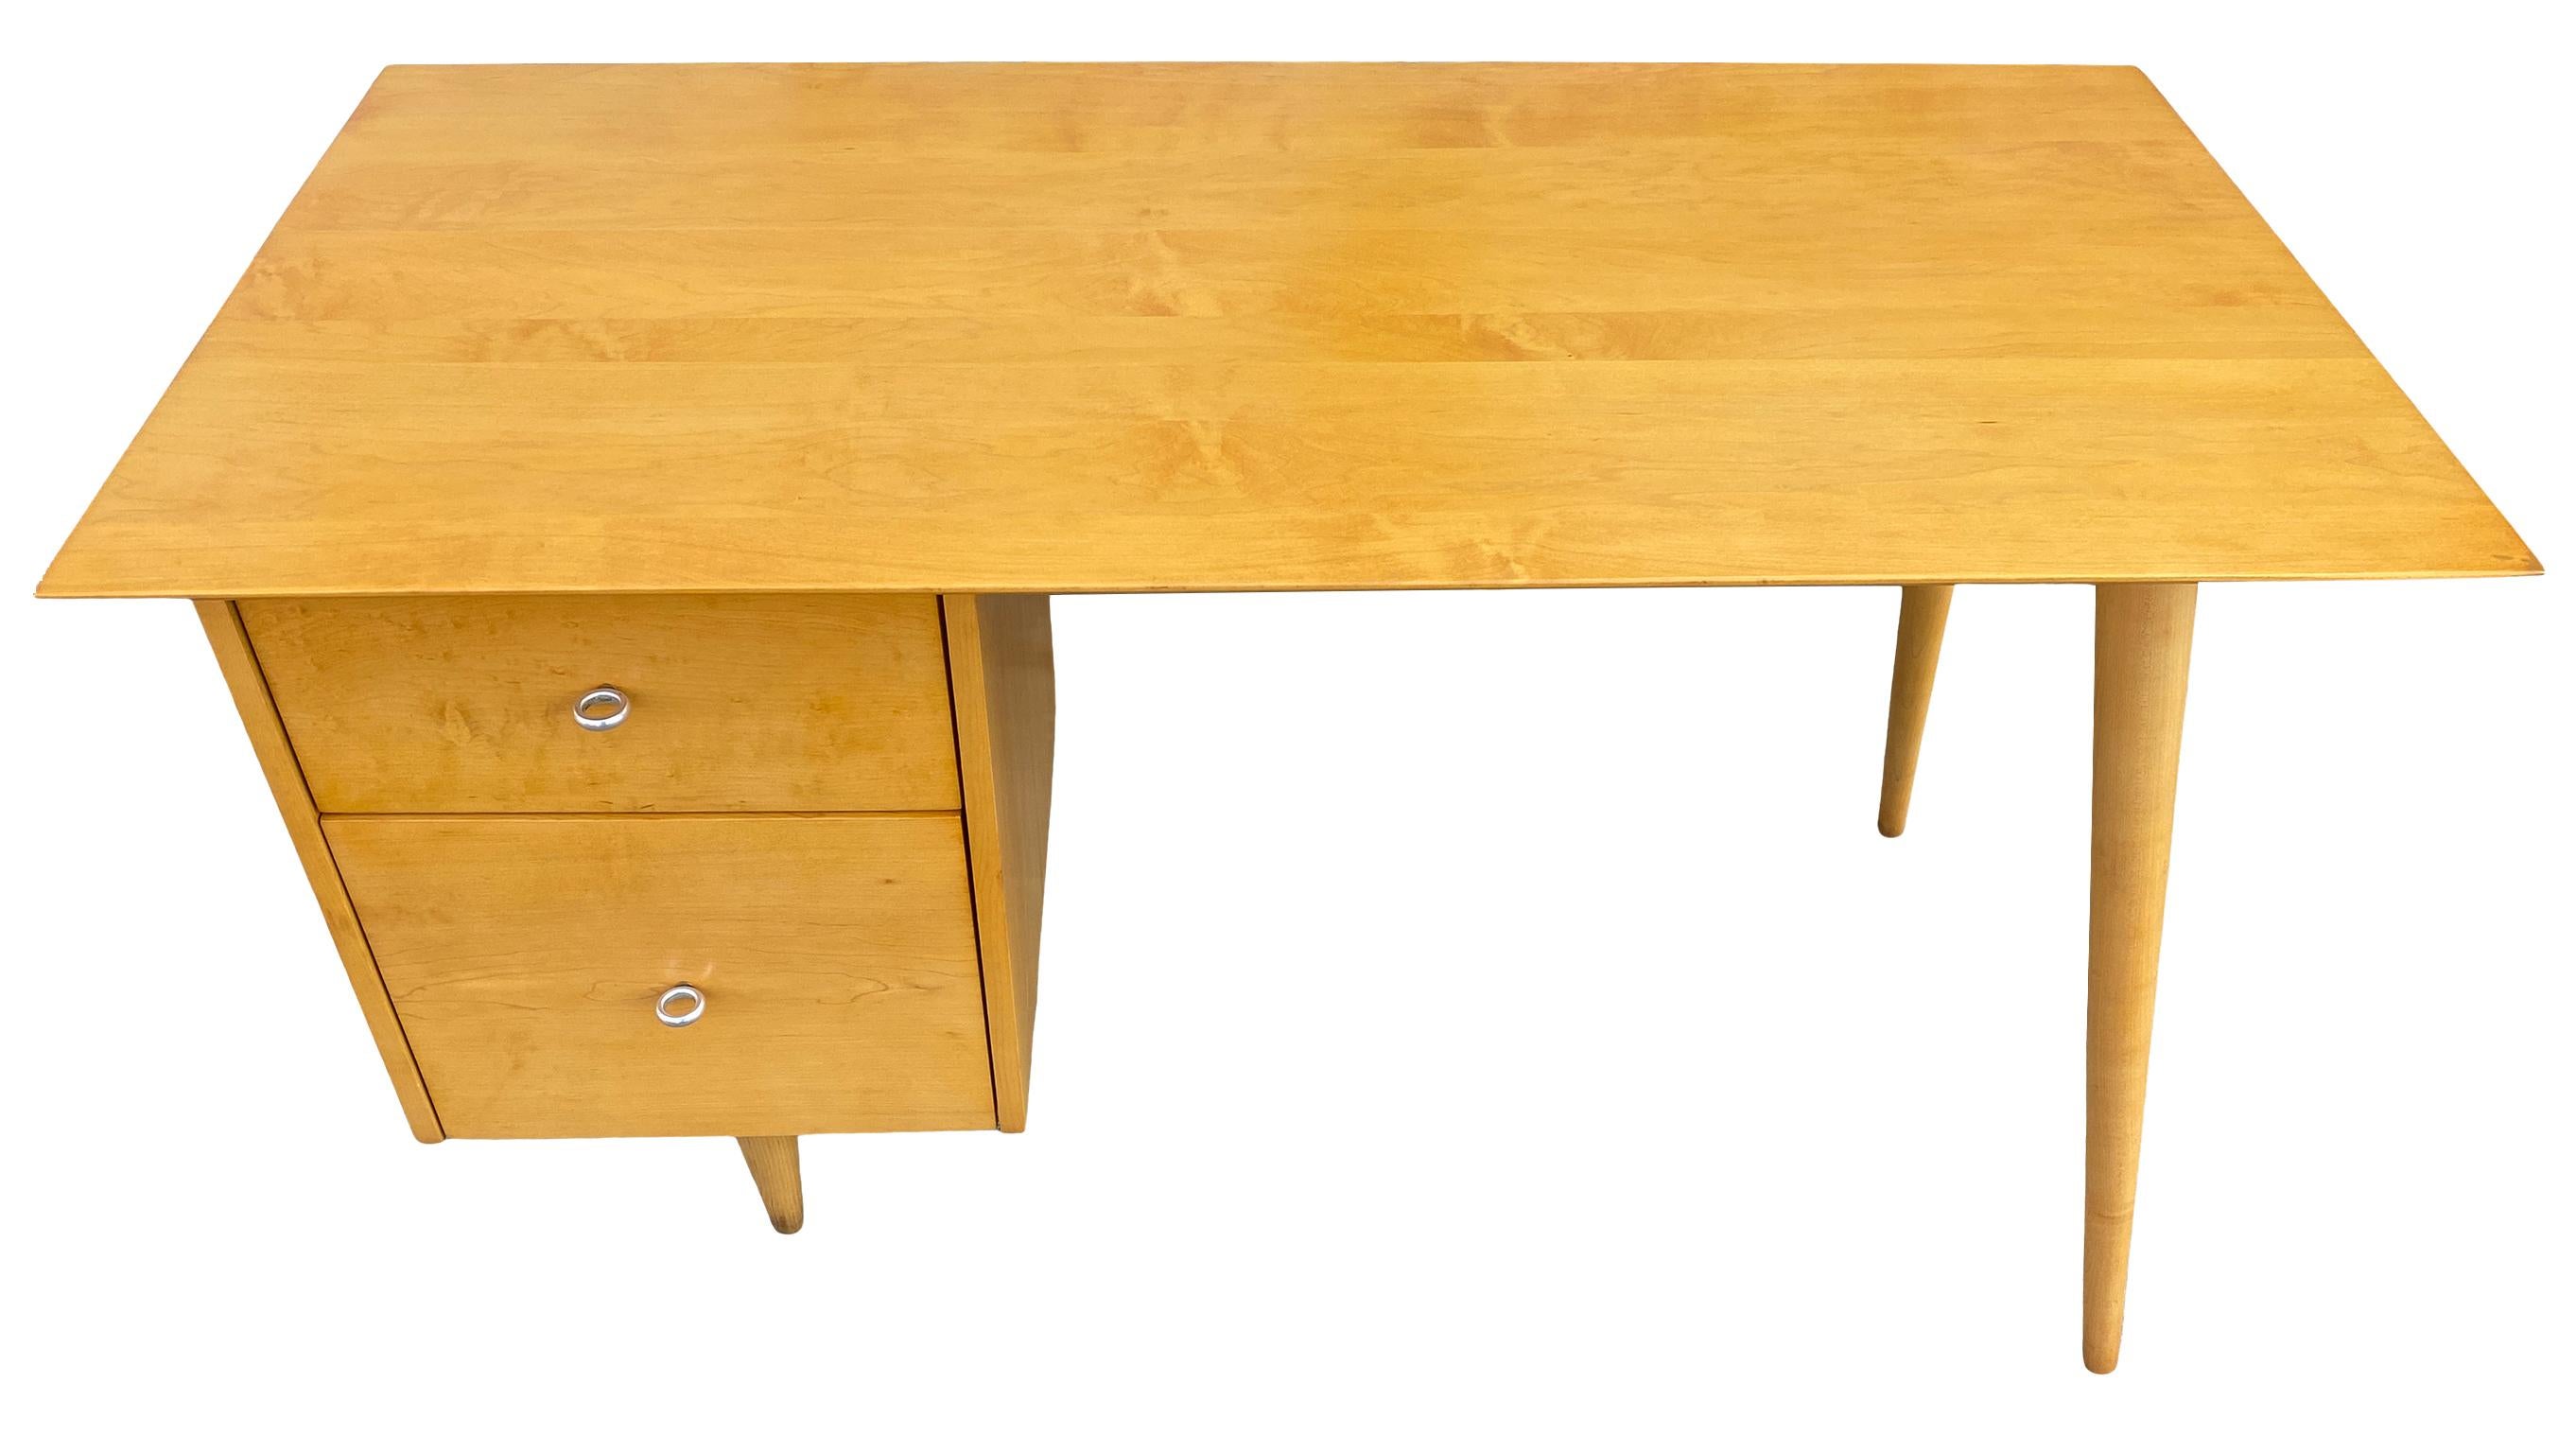 Schöne Paul McCobb Planner Group #1560 Doppel-Schublade Schreibtisch blond Ahorn Finish mit Aluminium-Ring ziehen Knöpfe massivem Ahorn. Der Schreibtisch wurde professionell aufgearbeitet. Sehr schön gestalteter Schreibtisch auf konischen Beinen,